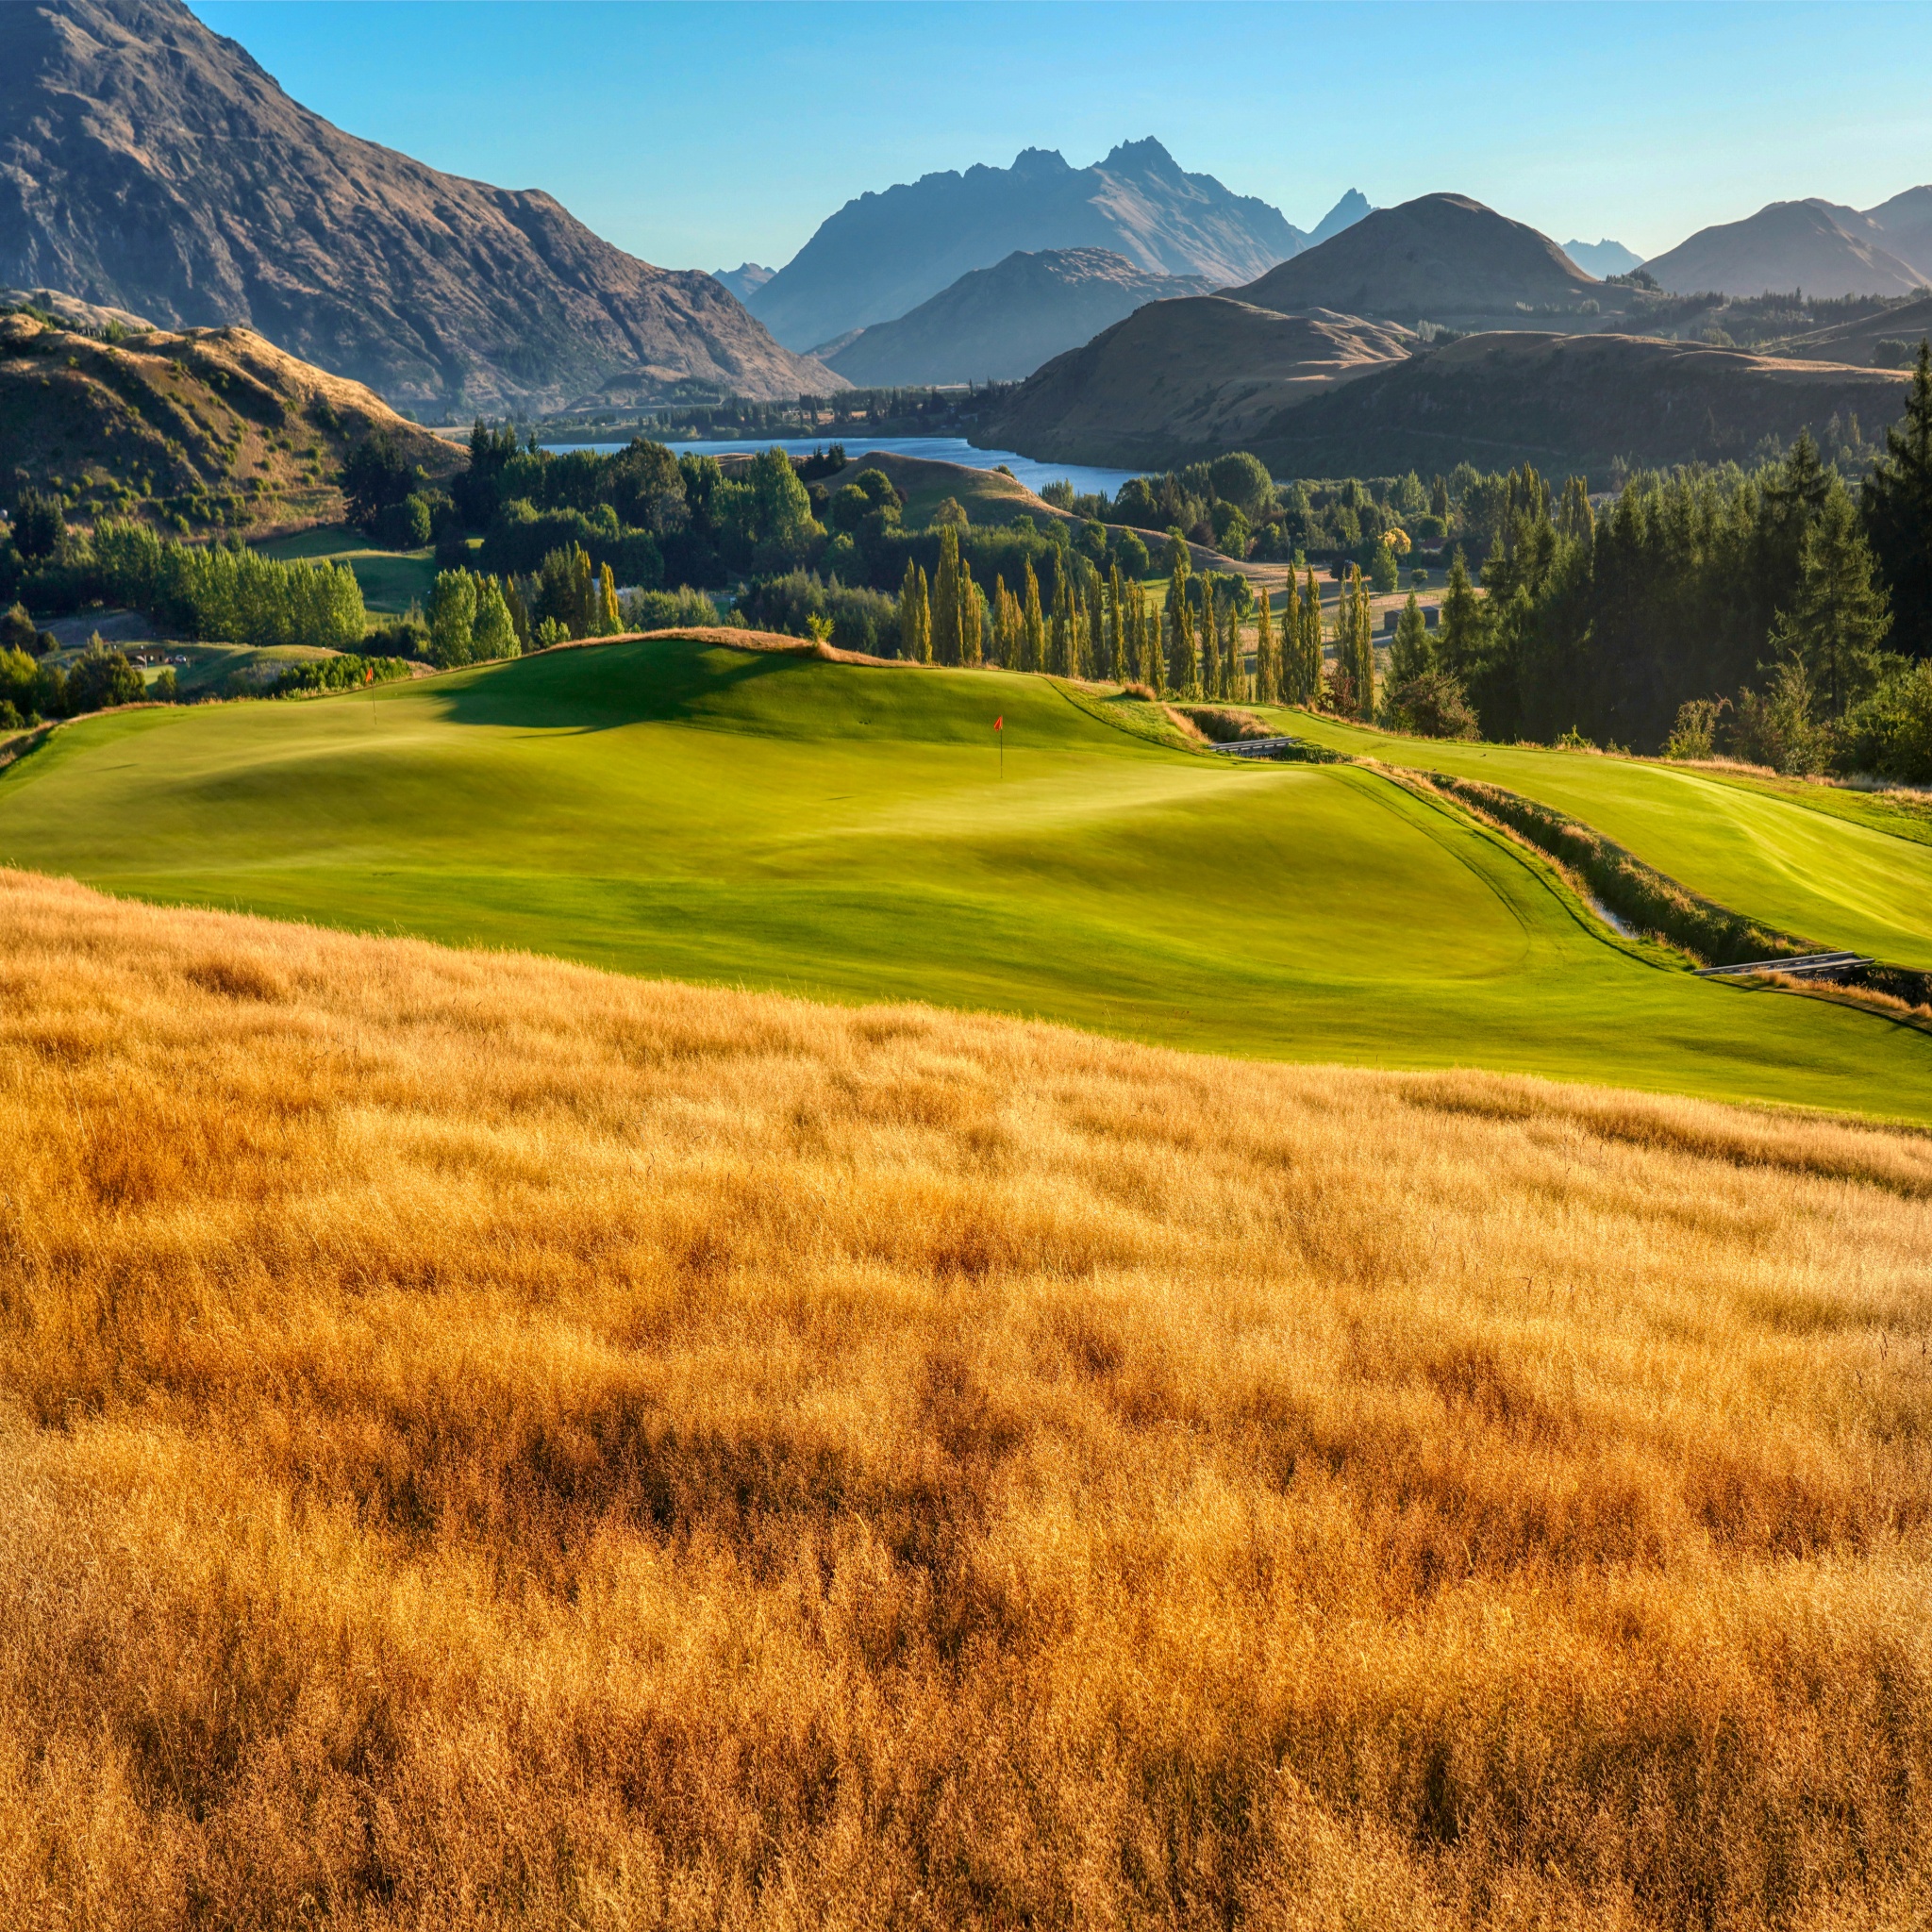 Golf course Wallpaper 4K, Landscape, Mountains, Nature, #2107